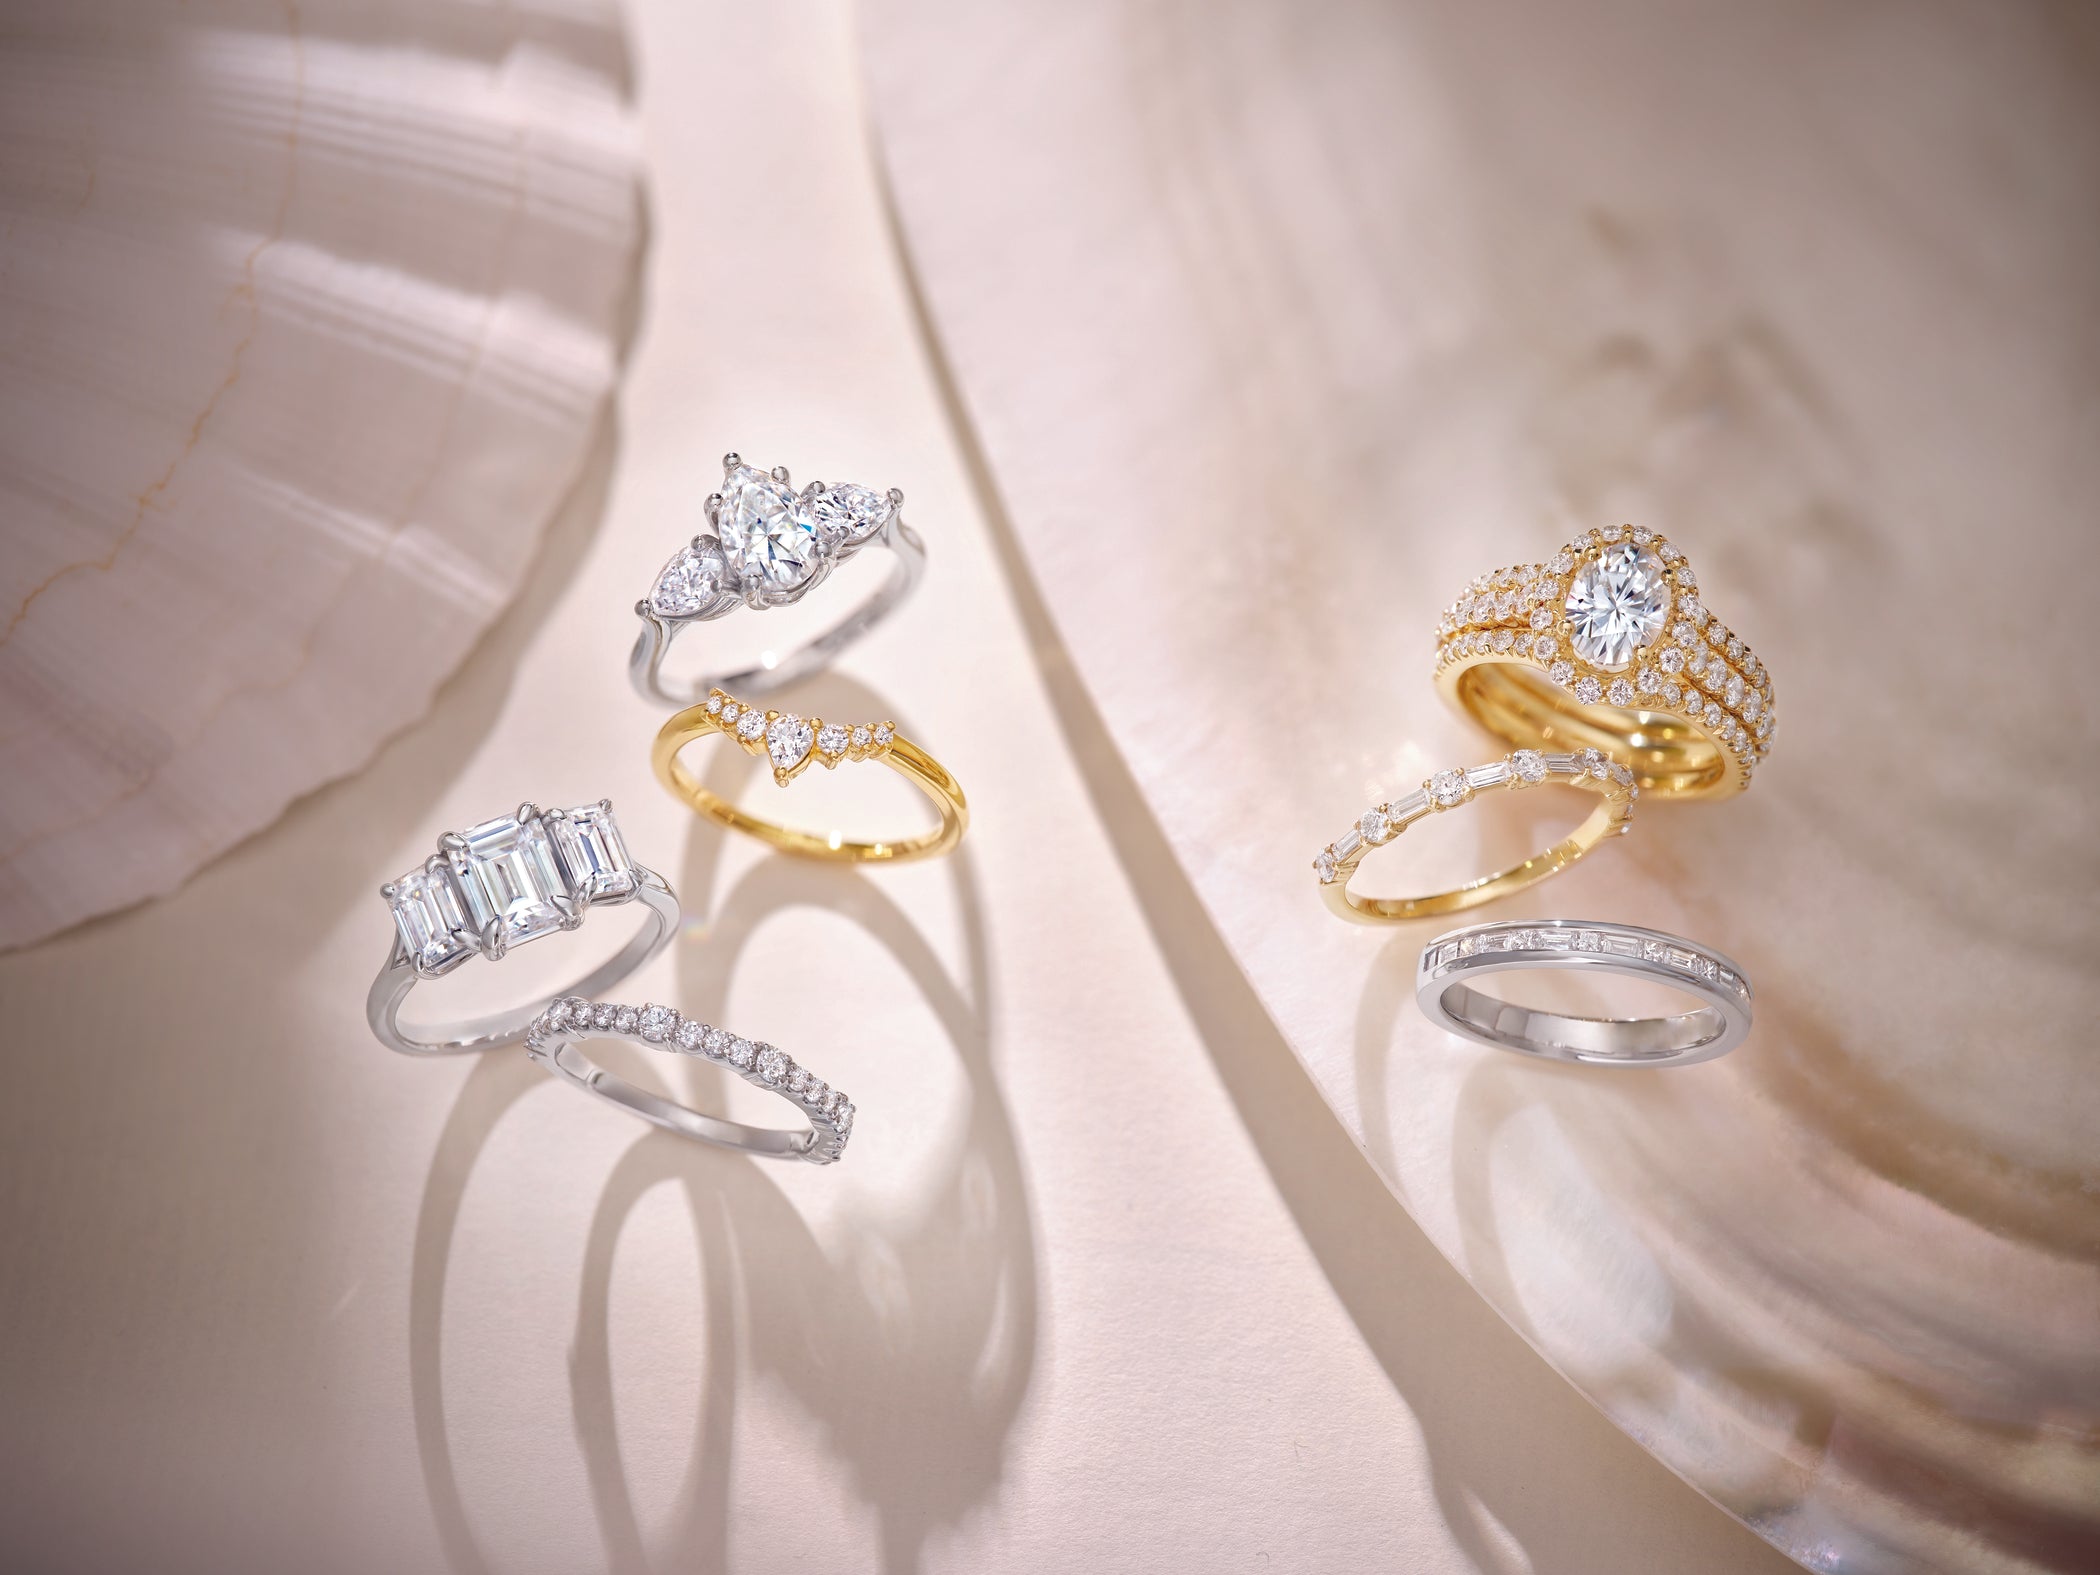 Amore Vintage Wedding Ring Set - Timeless Elegance